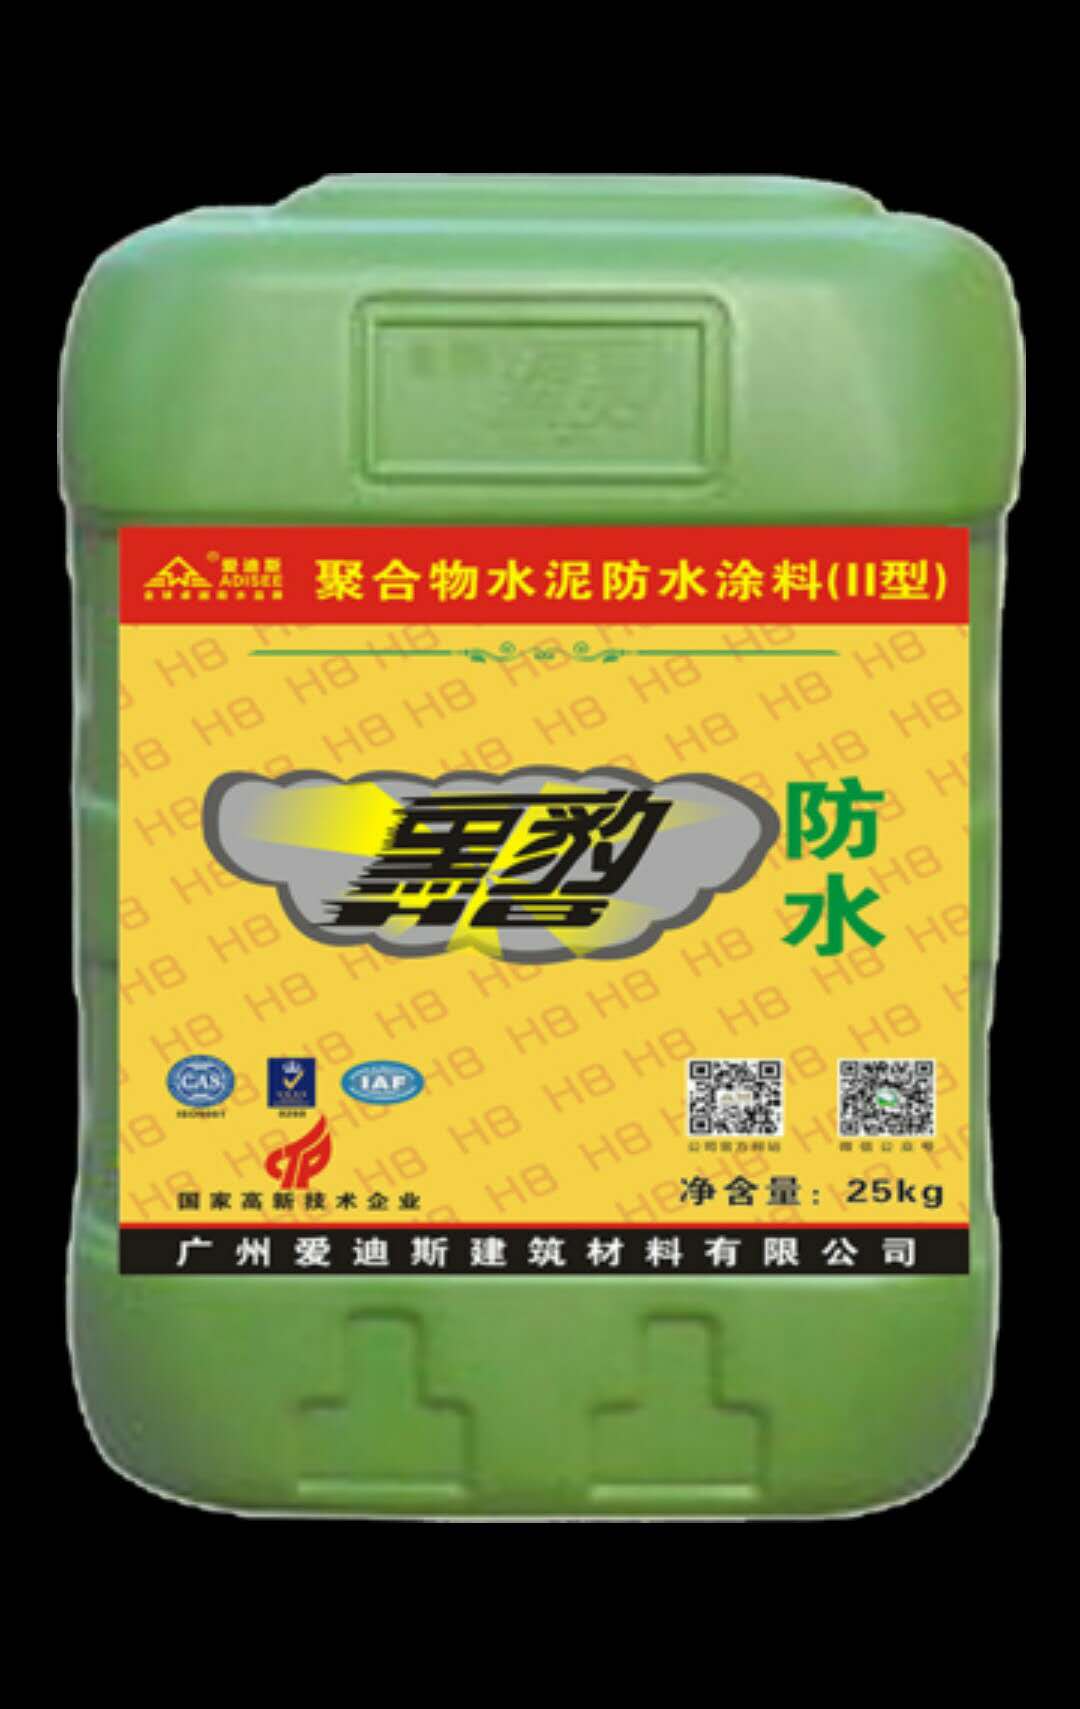 广东防水公司 聚合物水泥防水涂料2型 黑豹 施工功效